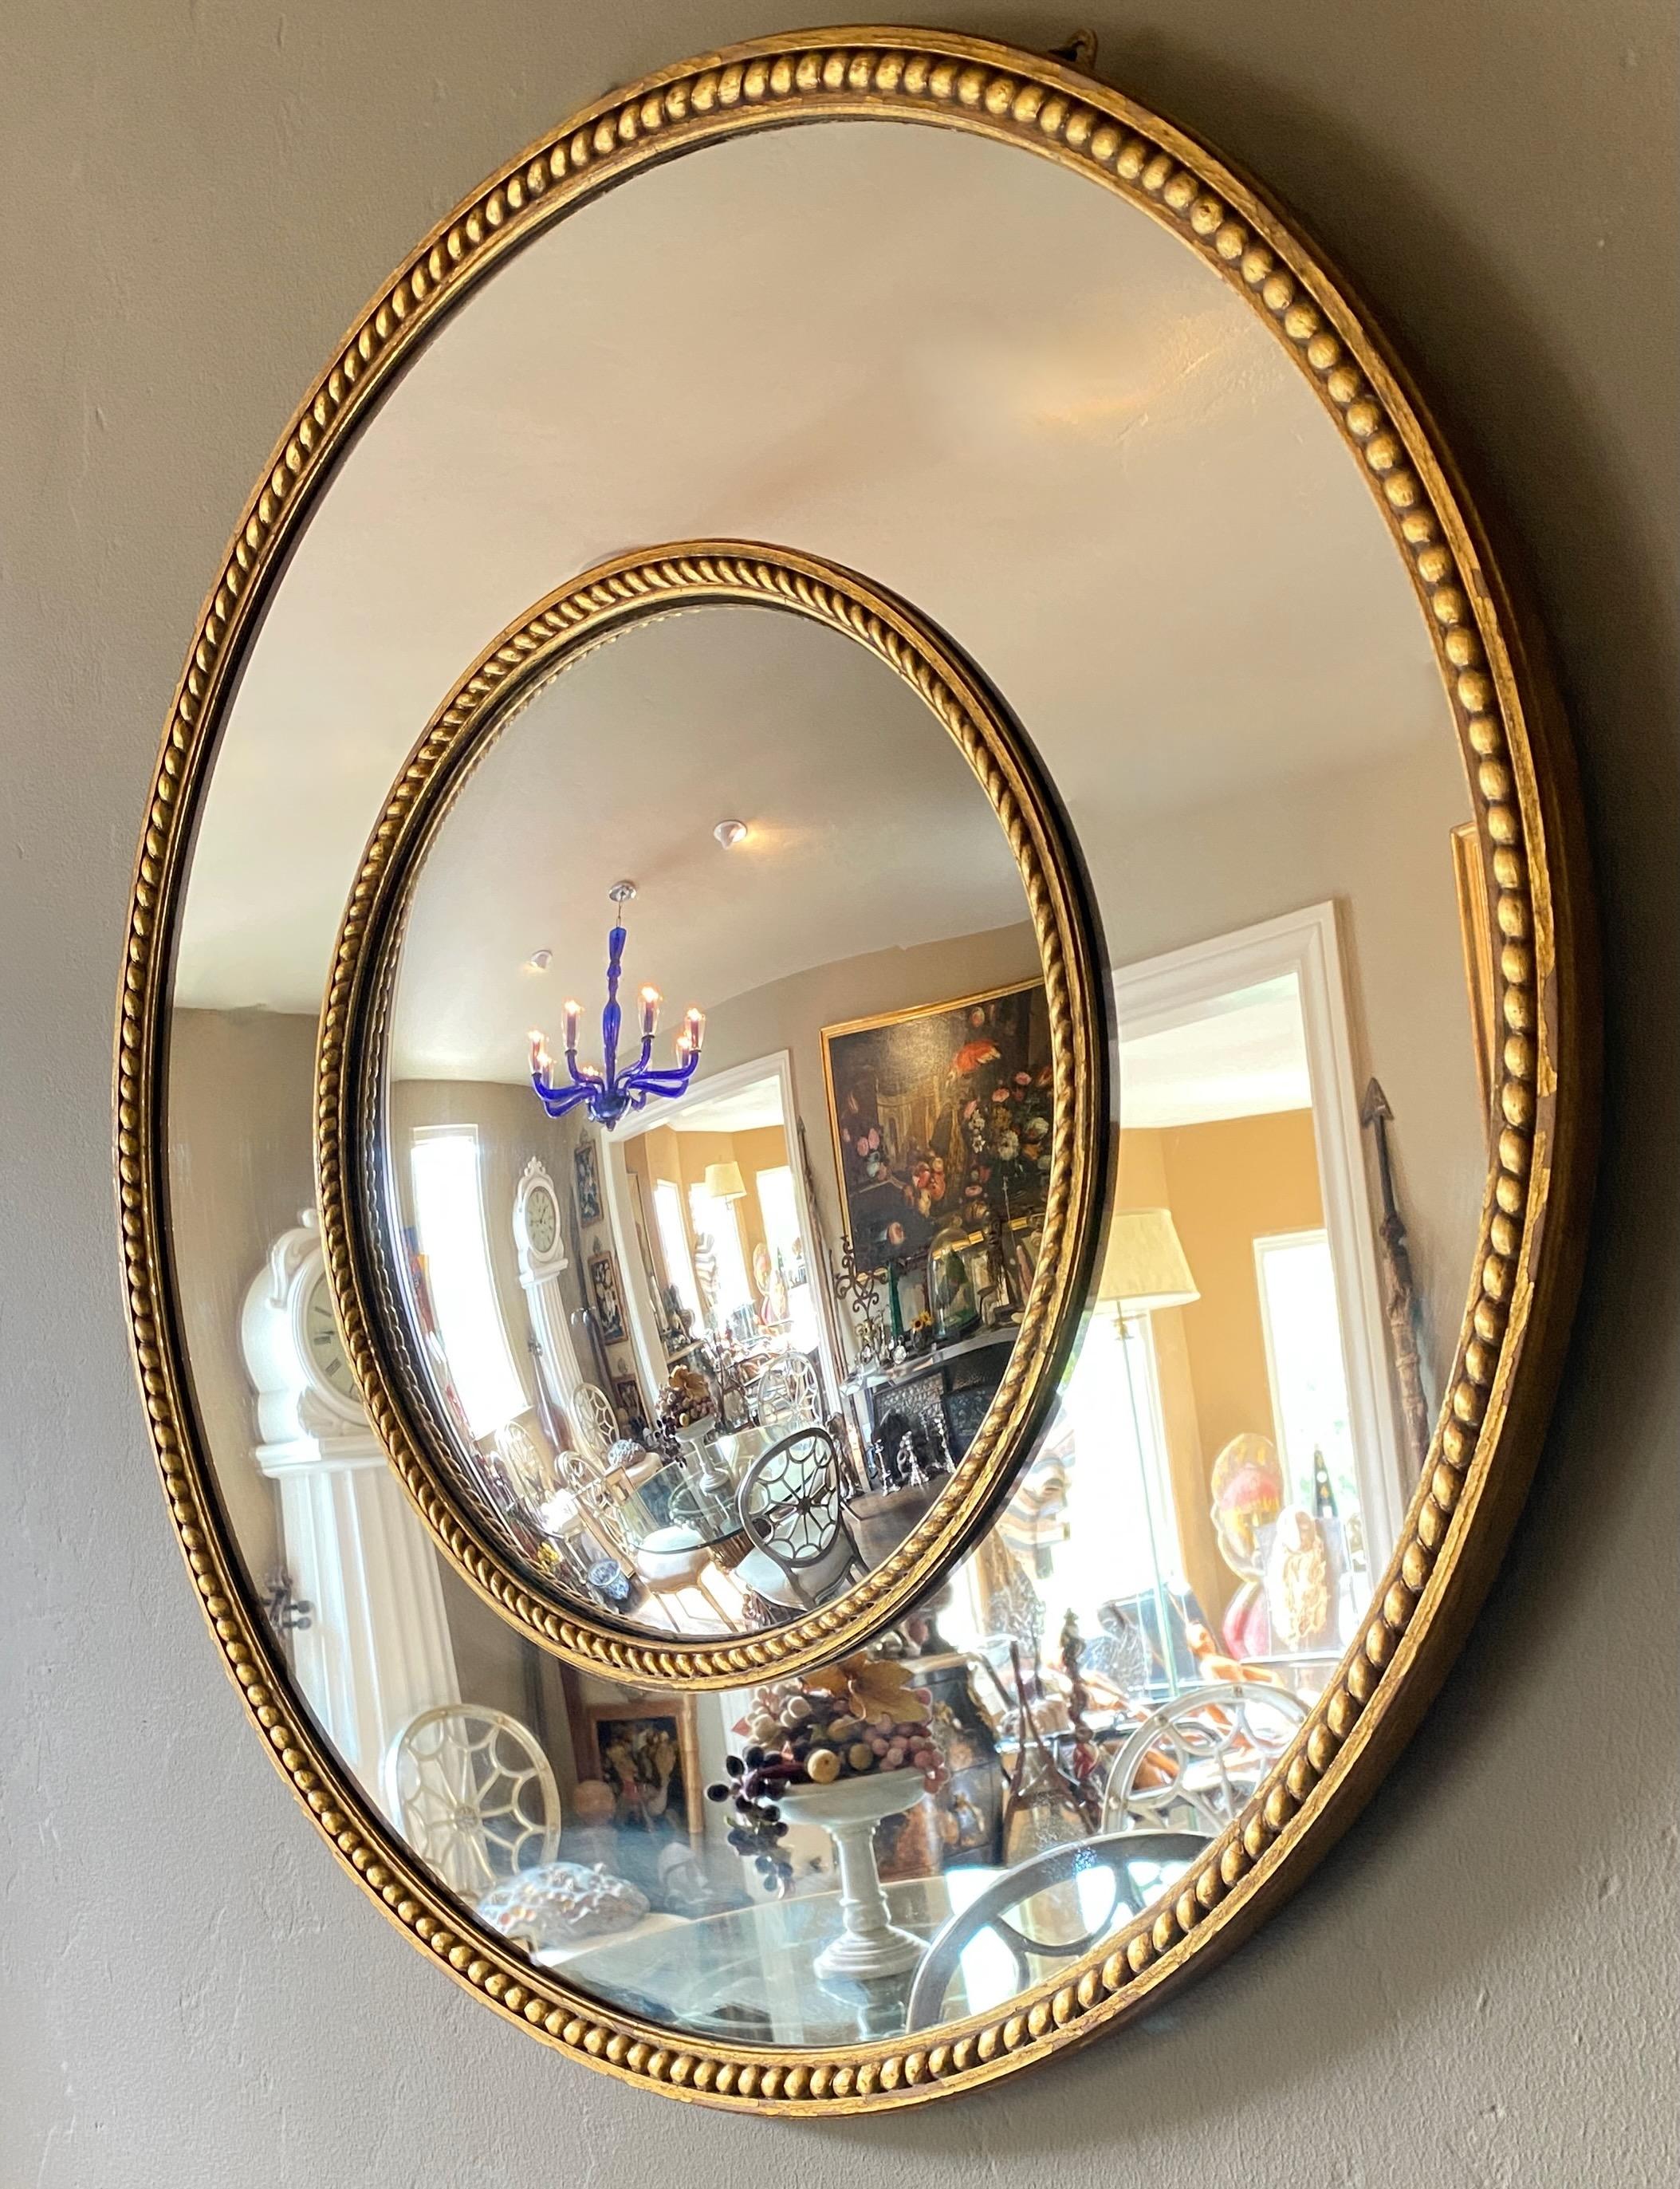 Ein konvexer Spiegel aus der Mitte des Jahrhunderts aus Holz und mit goldenem Gesso-Rahmen. Die Mitte ist konvex, die Seitenteile sind flache Spiegel.
In ausgezeichnetem Vintage-Zustand.
Amerikanisch 1950er-1960er Jahre.